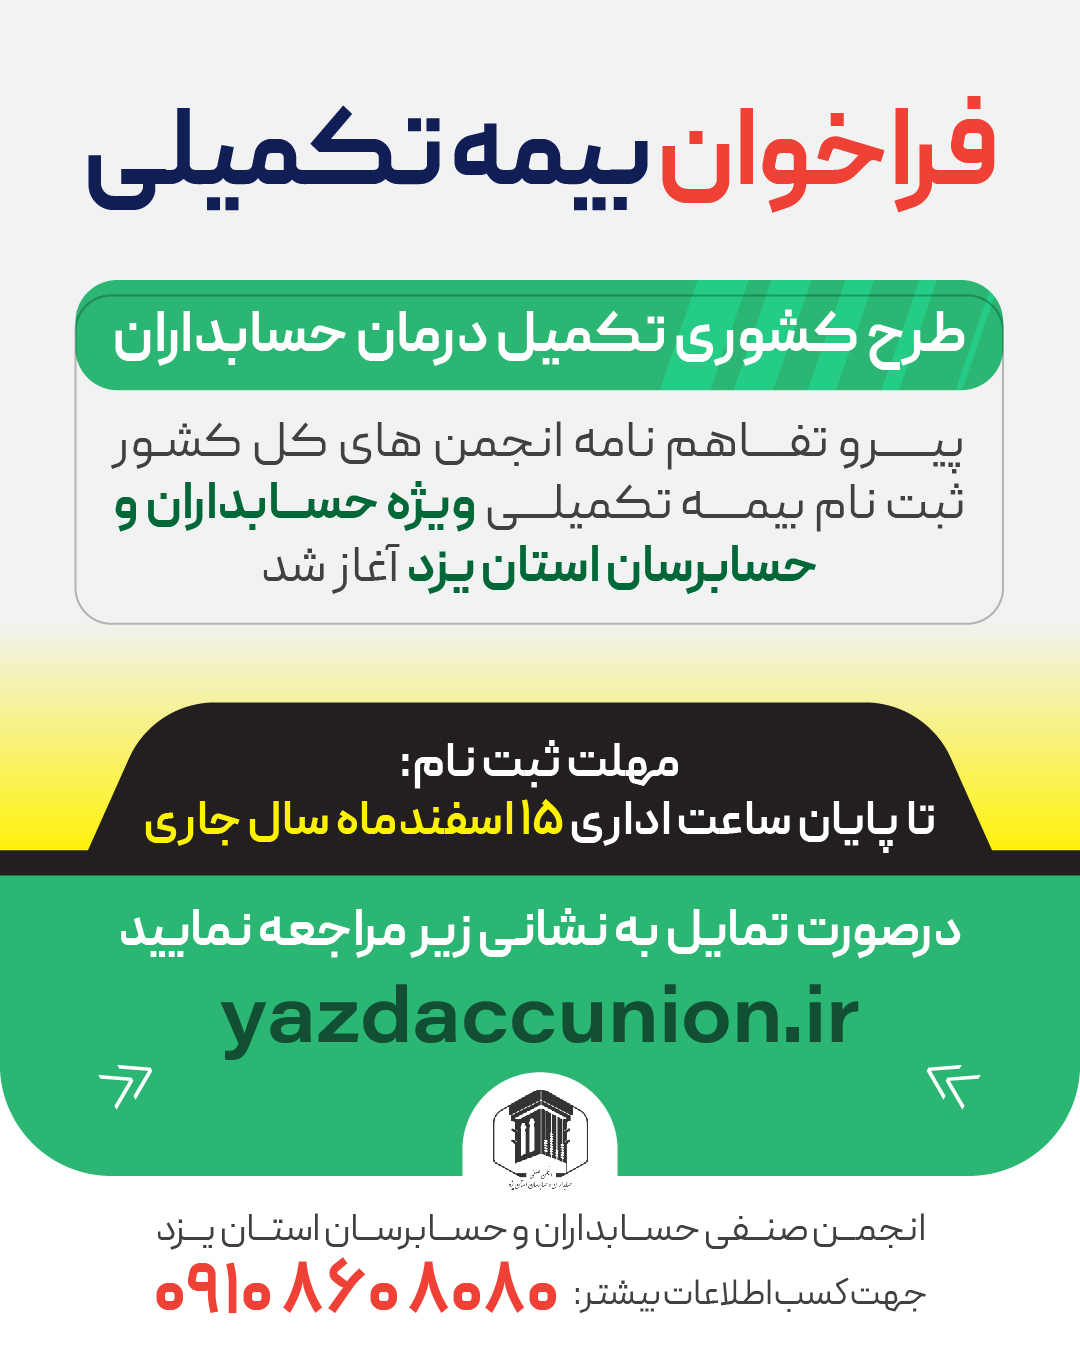 فراخوان بیمه تکمیلی حسابداران استان یزد 